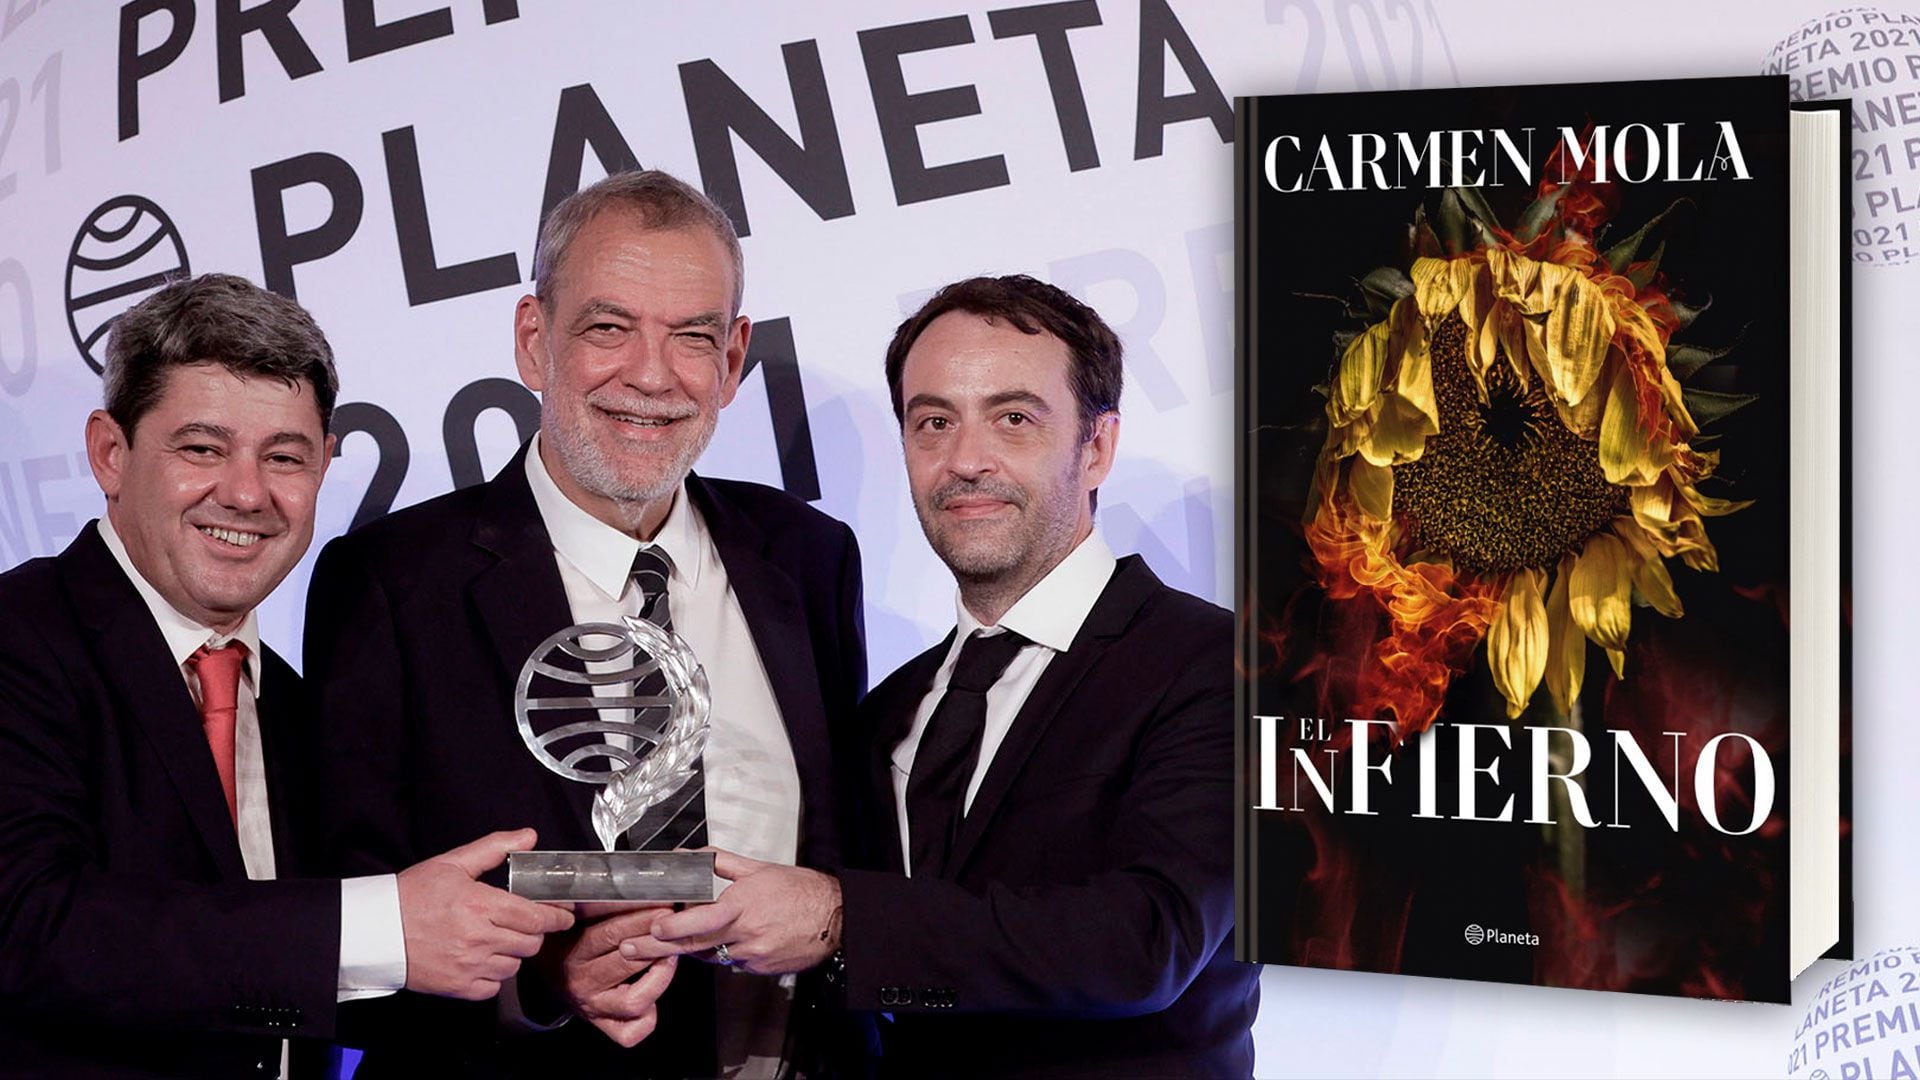 Jorge Díaz, Agustín Martínez and Antonio Mercero (Carmen Mola) and their new book, 'Hell'